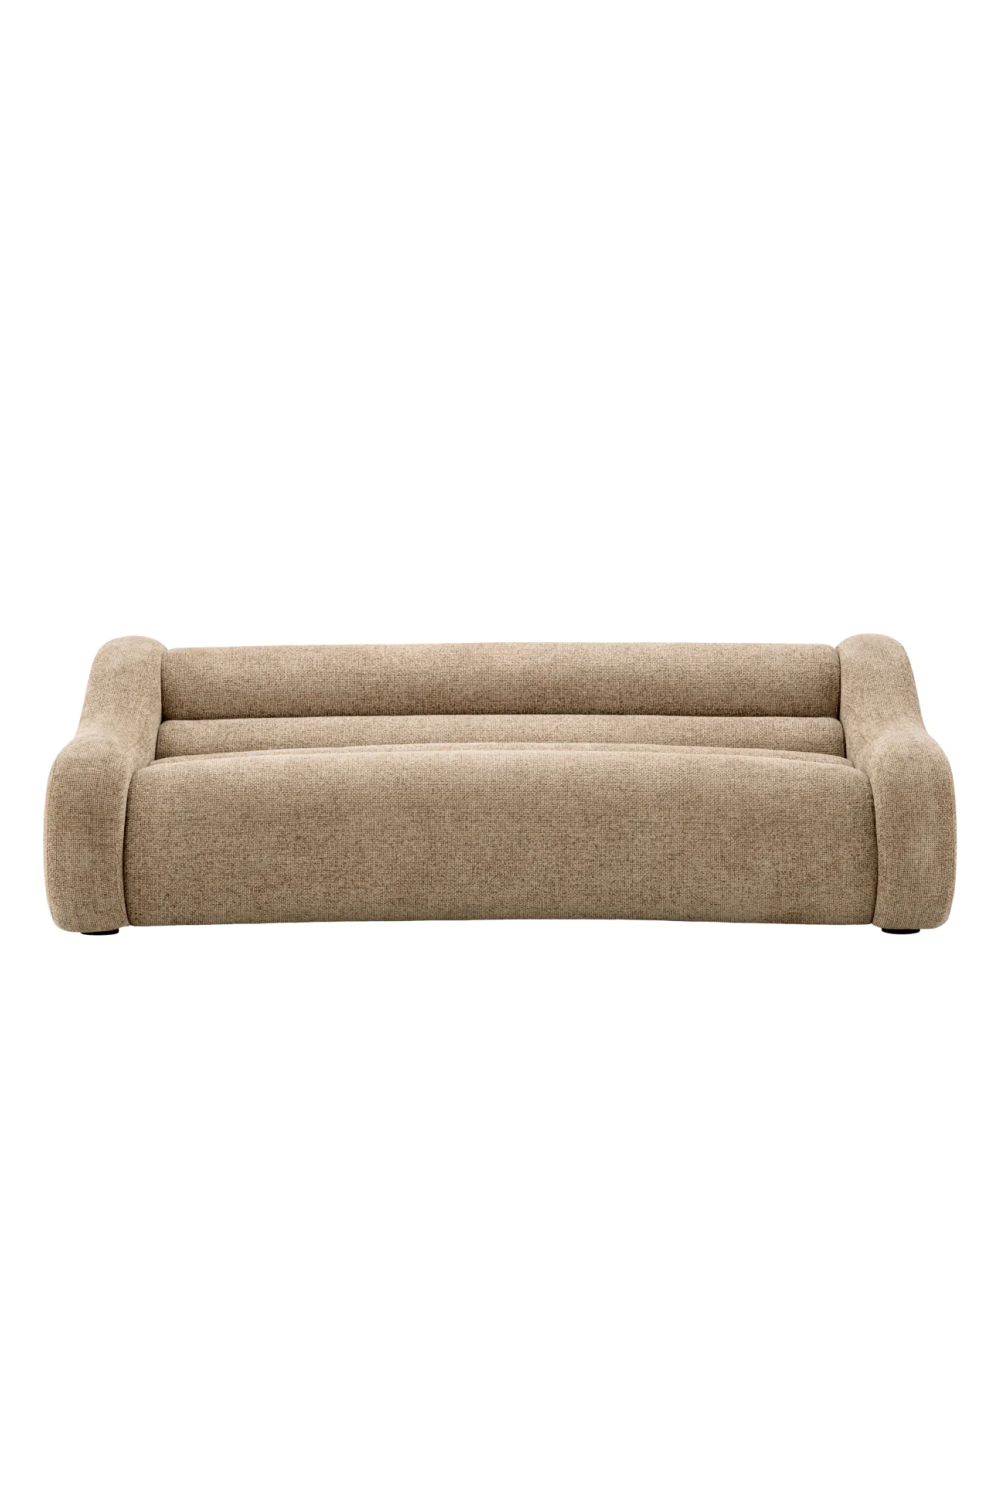 Beige Curved Sofa | Eichholtz Carbone | Oroa.com